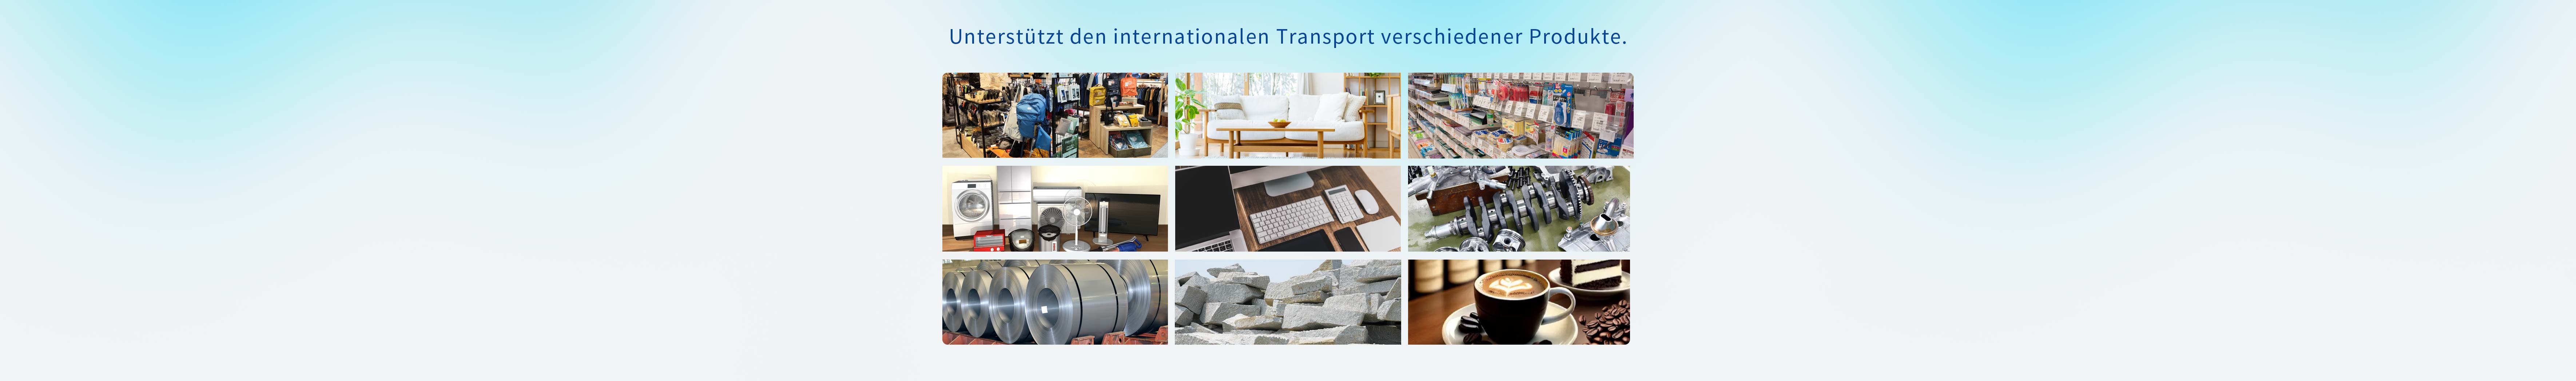 さまざまな商品の国際輸送に対応